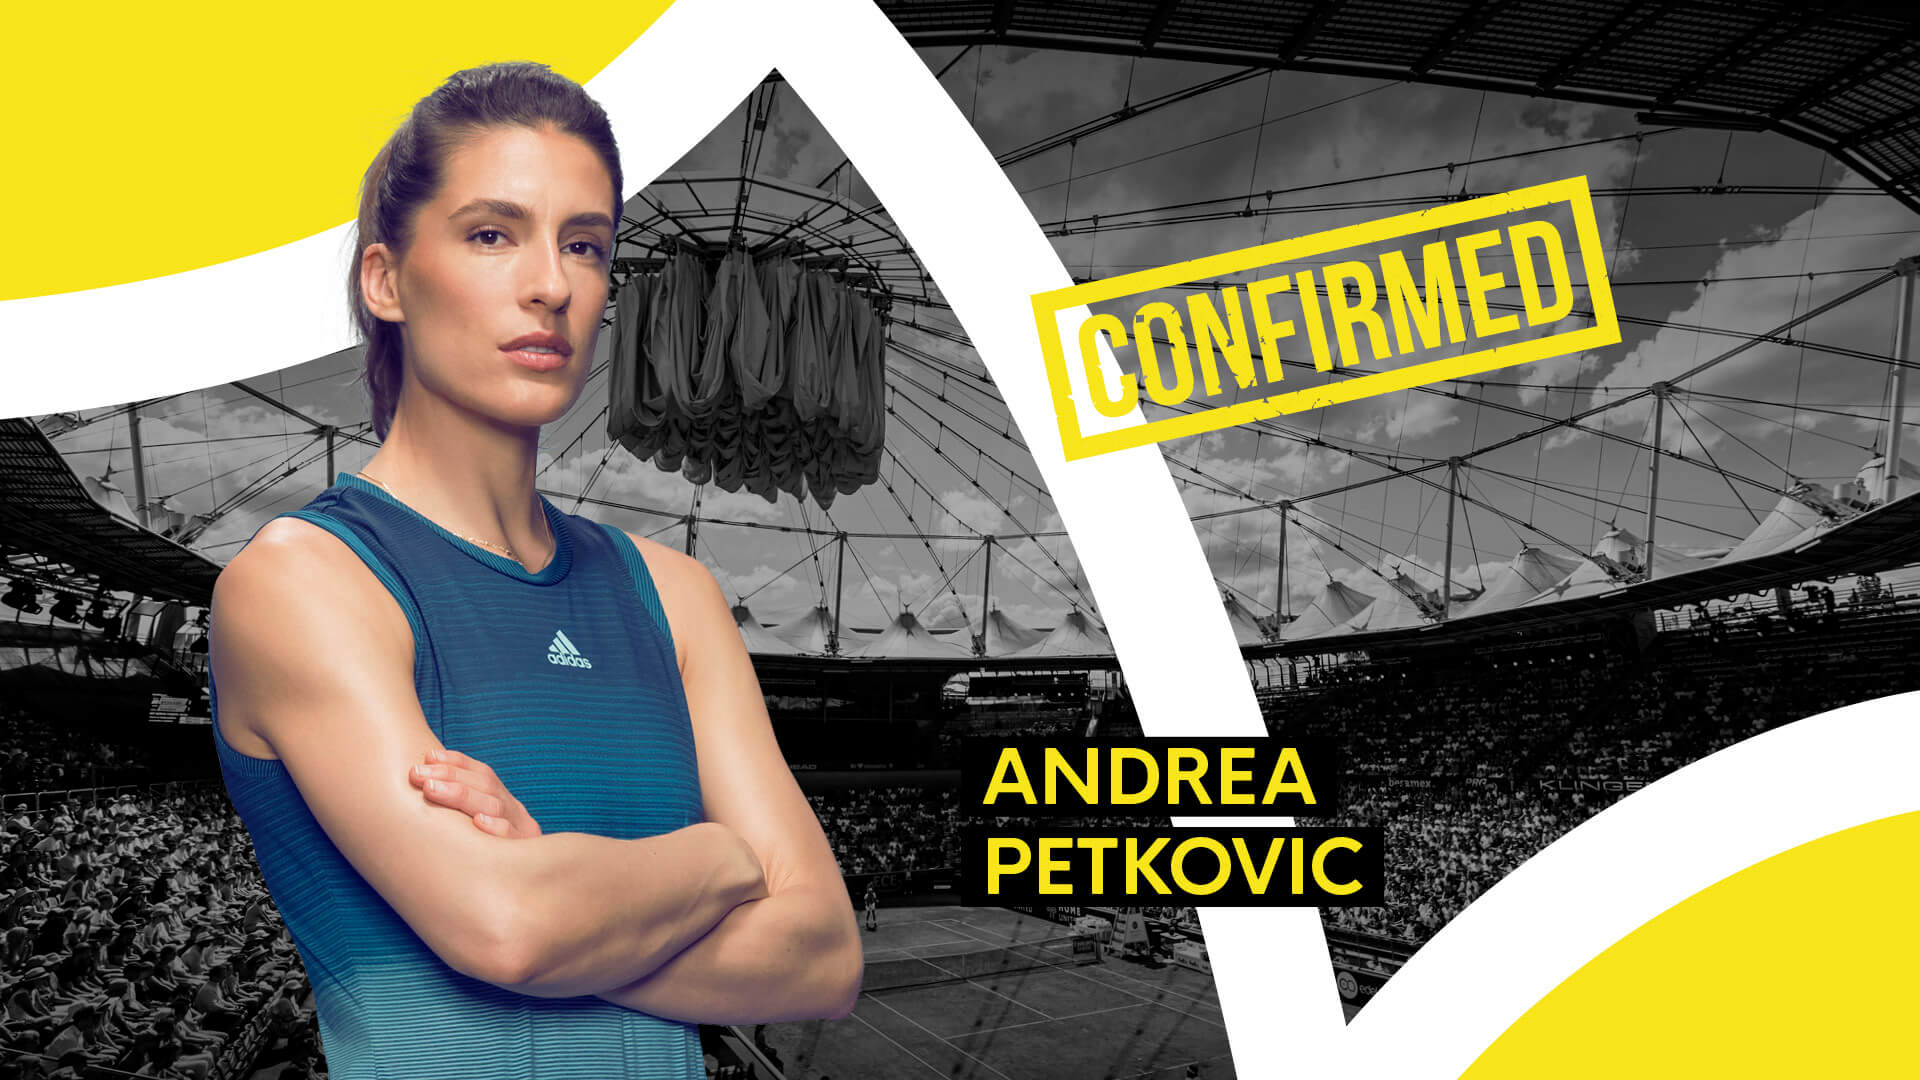 Andrea Petkovic Will Compete In Hamburg Hamburg European Open 2021